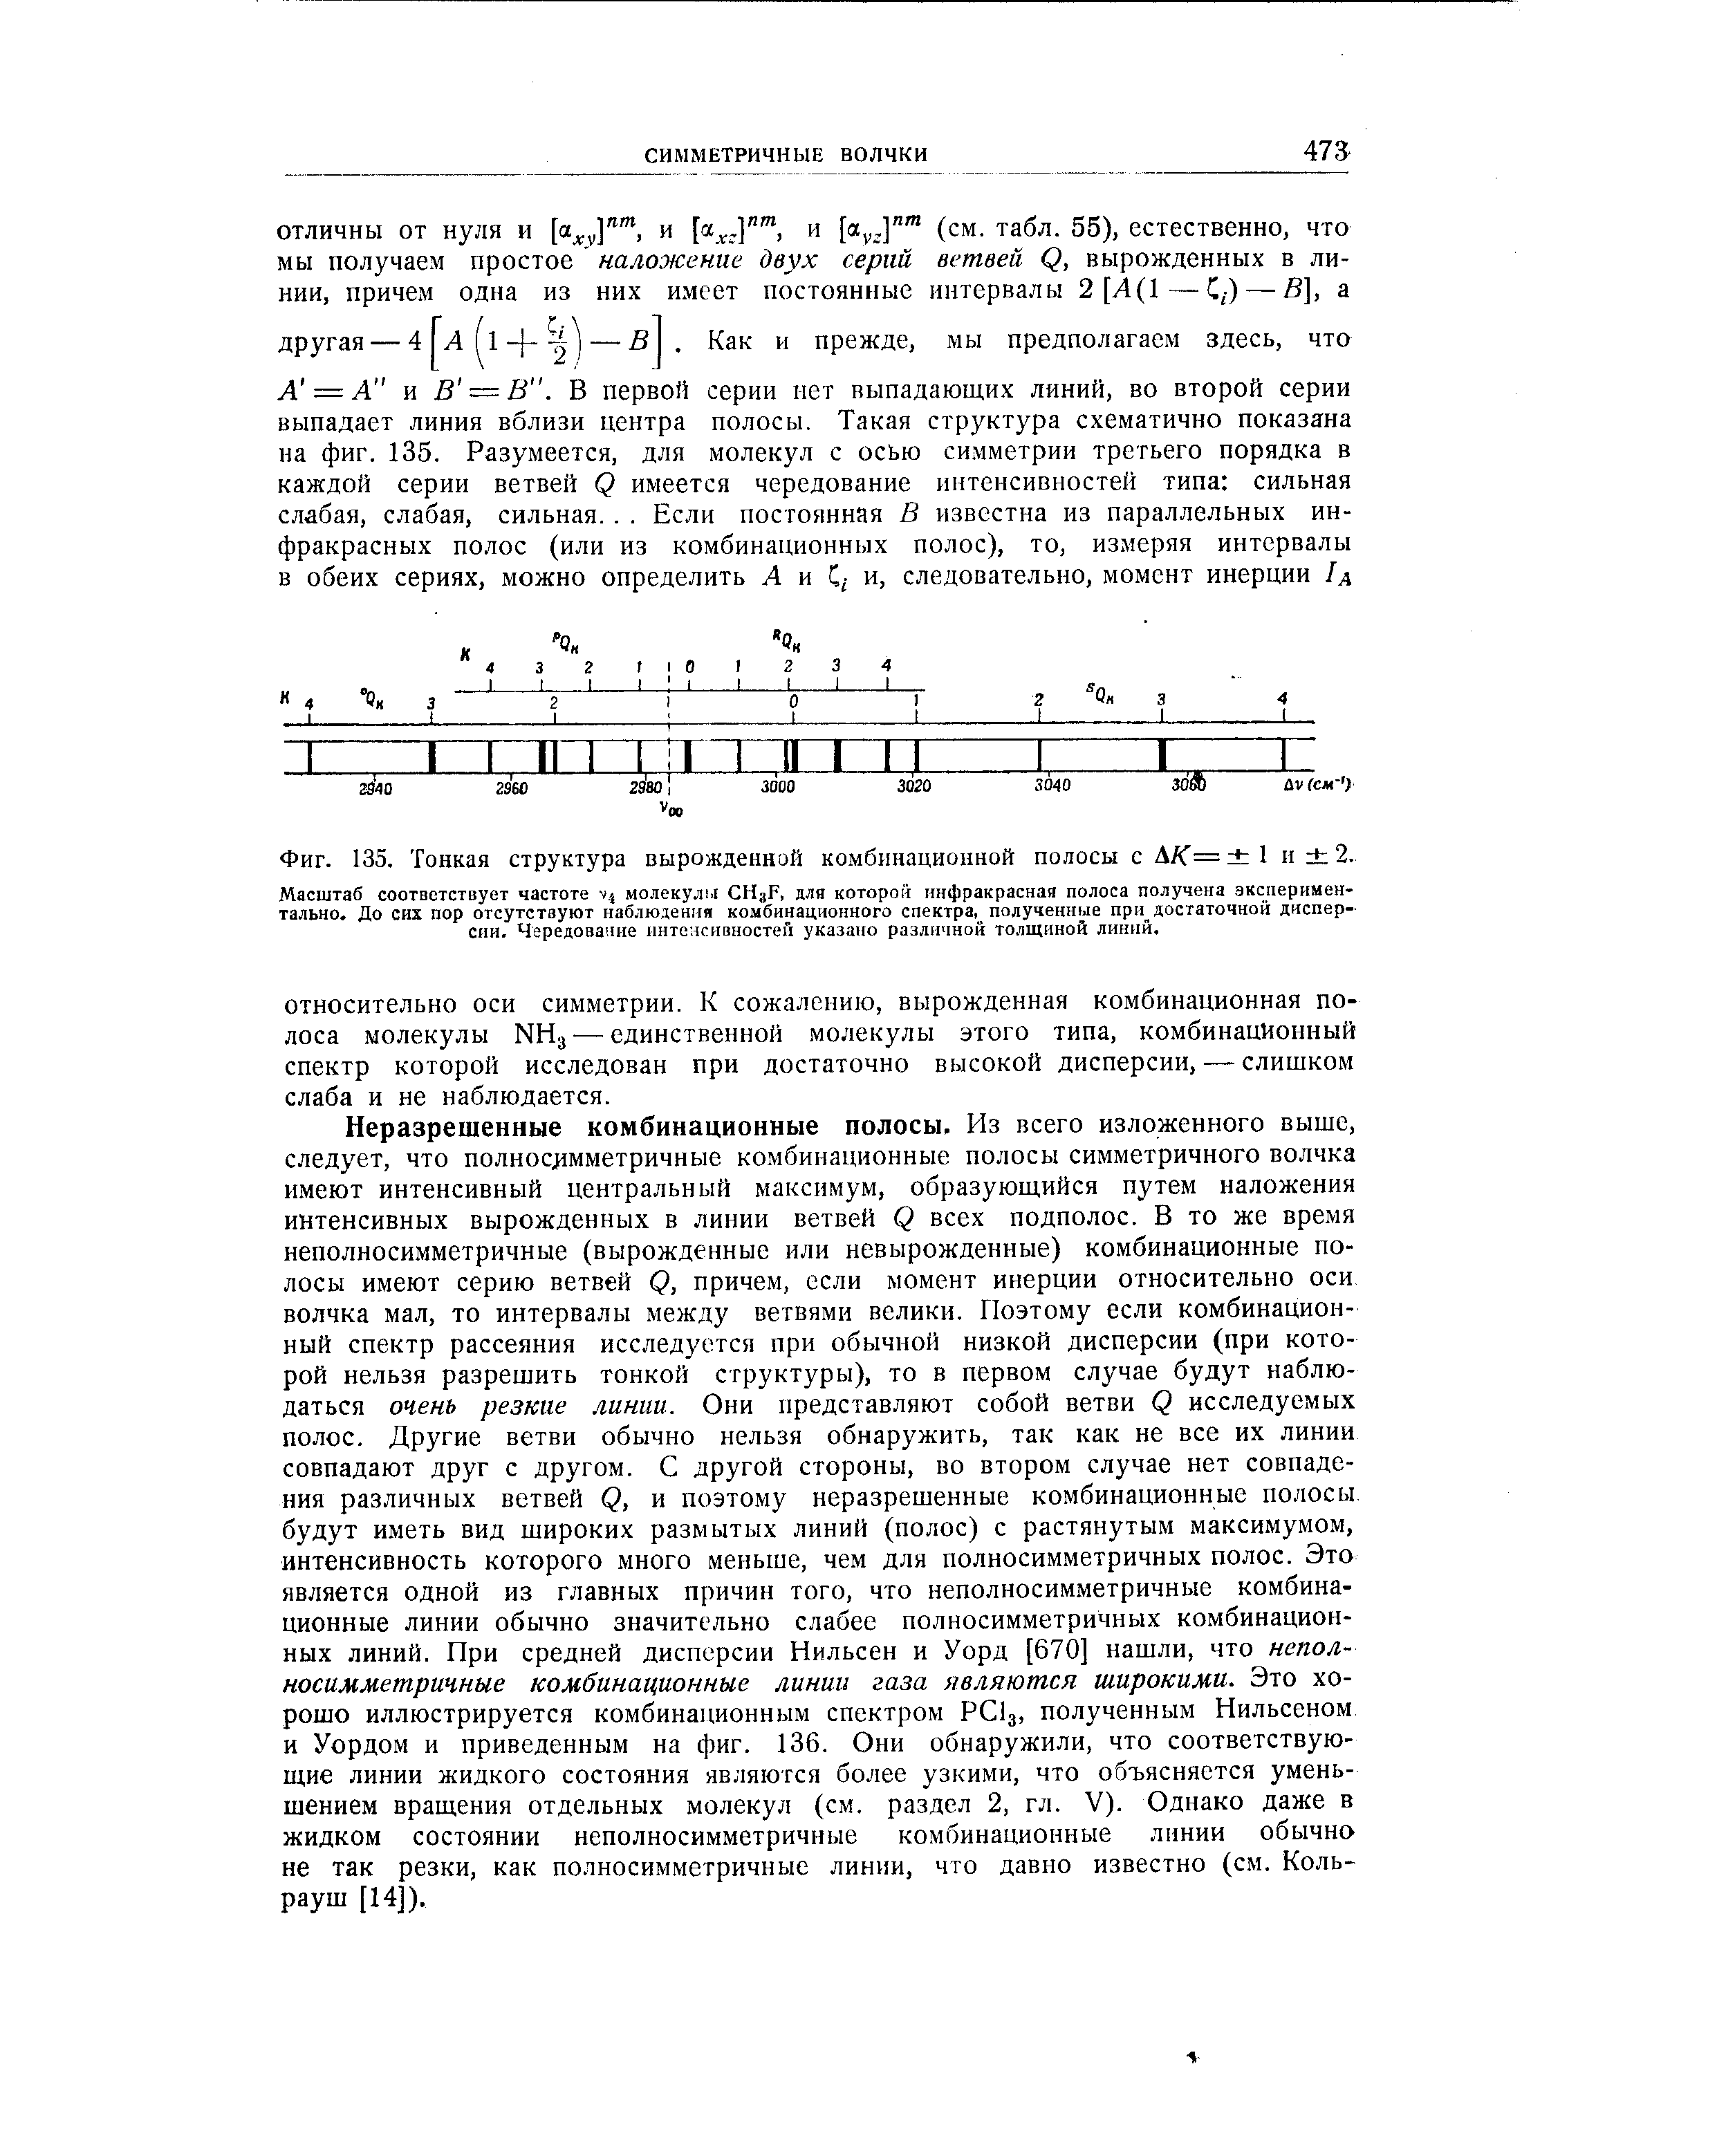 Фиг. 135. <a href="/info/19028">Тонкая структура</a> вырожденной комбинационной полосы с ДА = 1 н 2.
